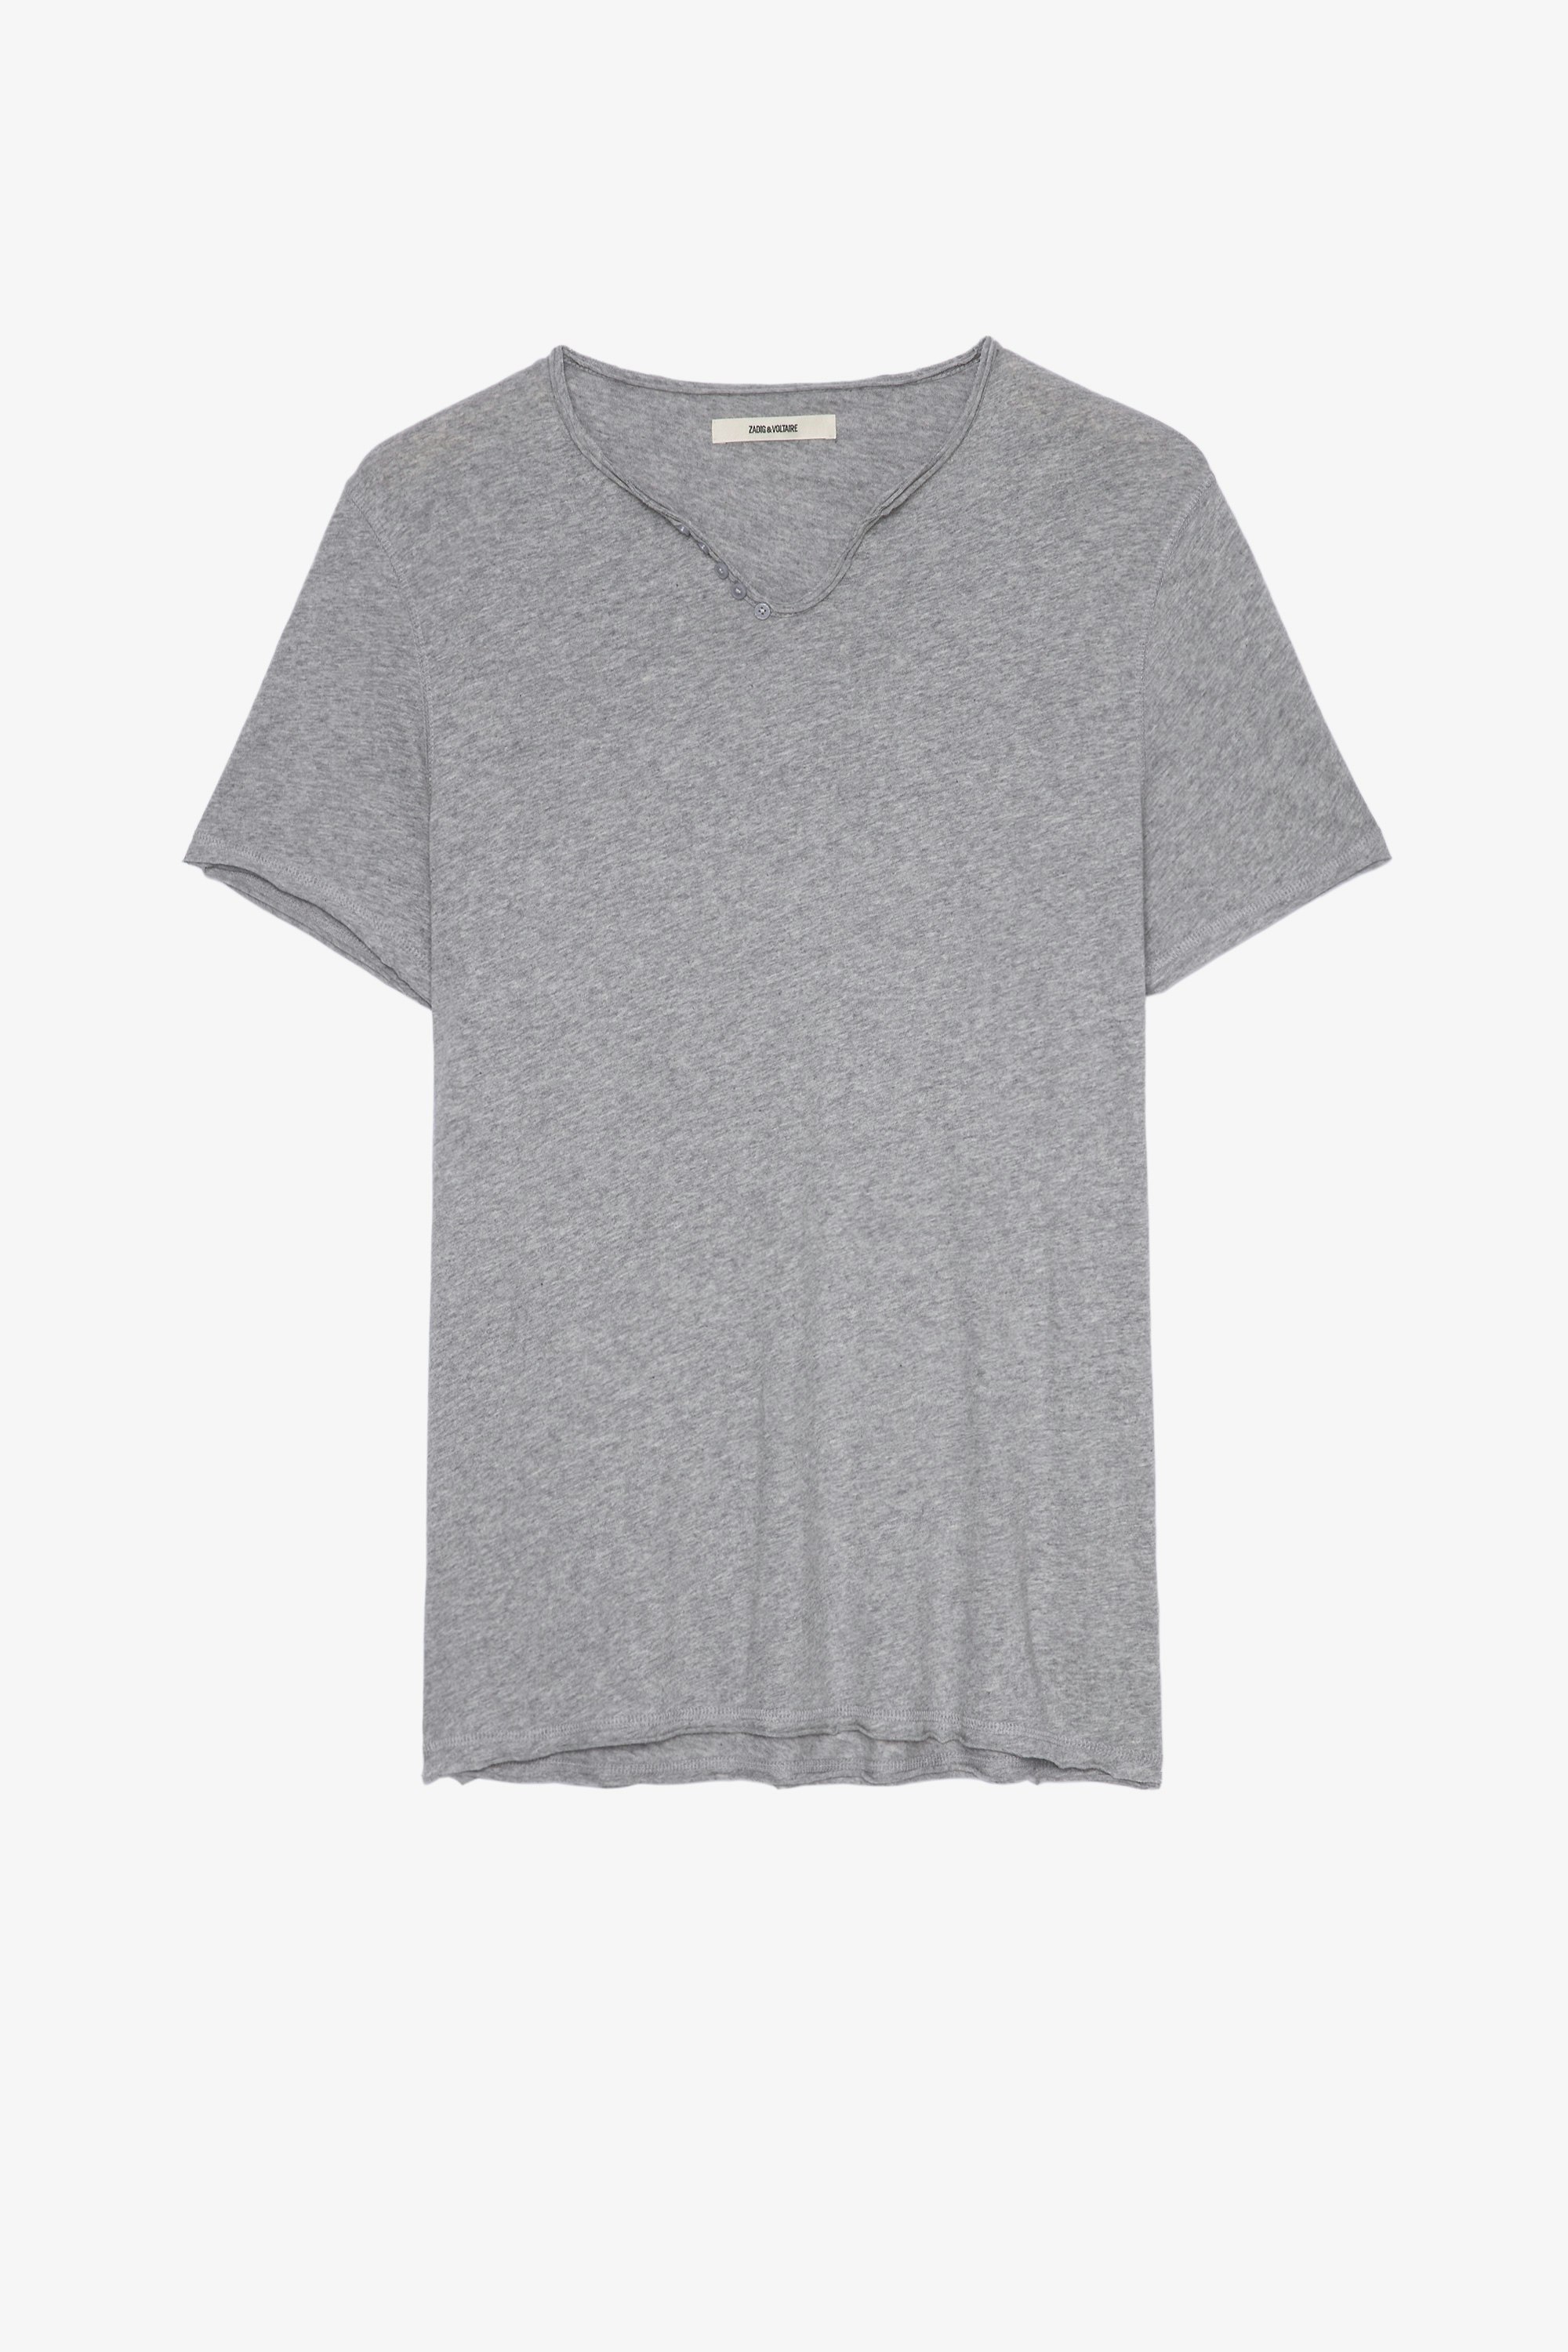 Camiseta Monastir Camiseta gris jaspeada de lino con cuello tunecino para hombre